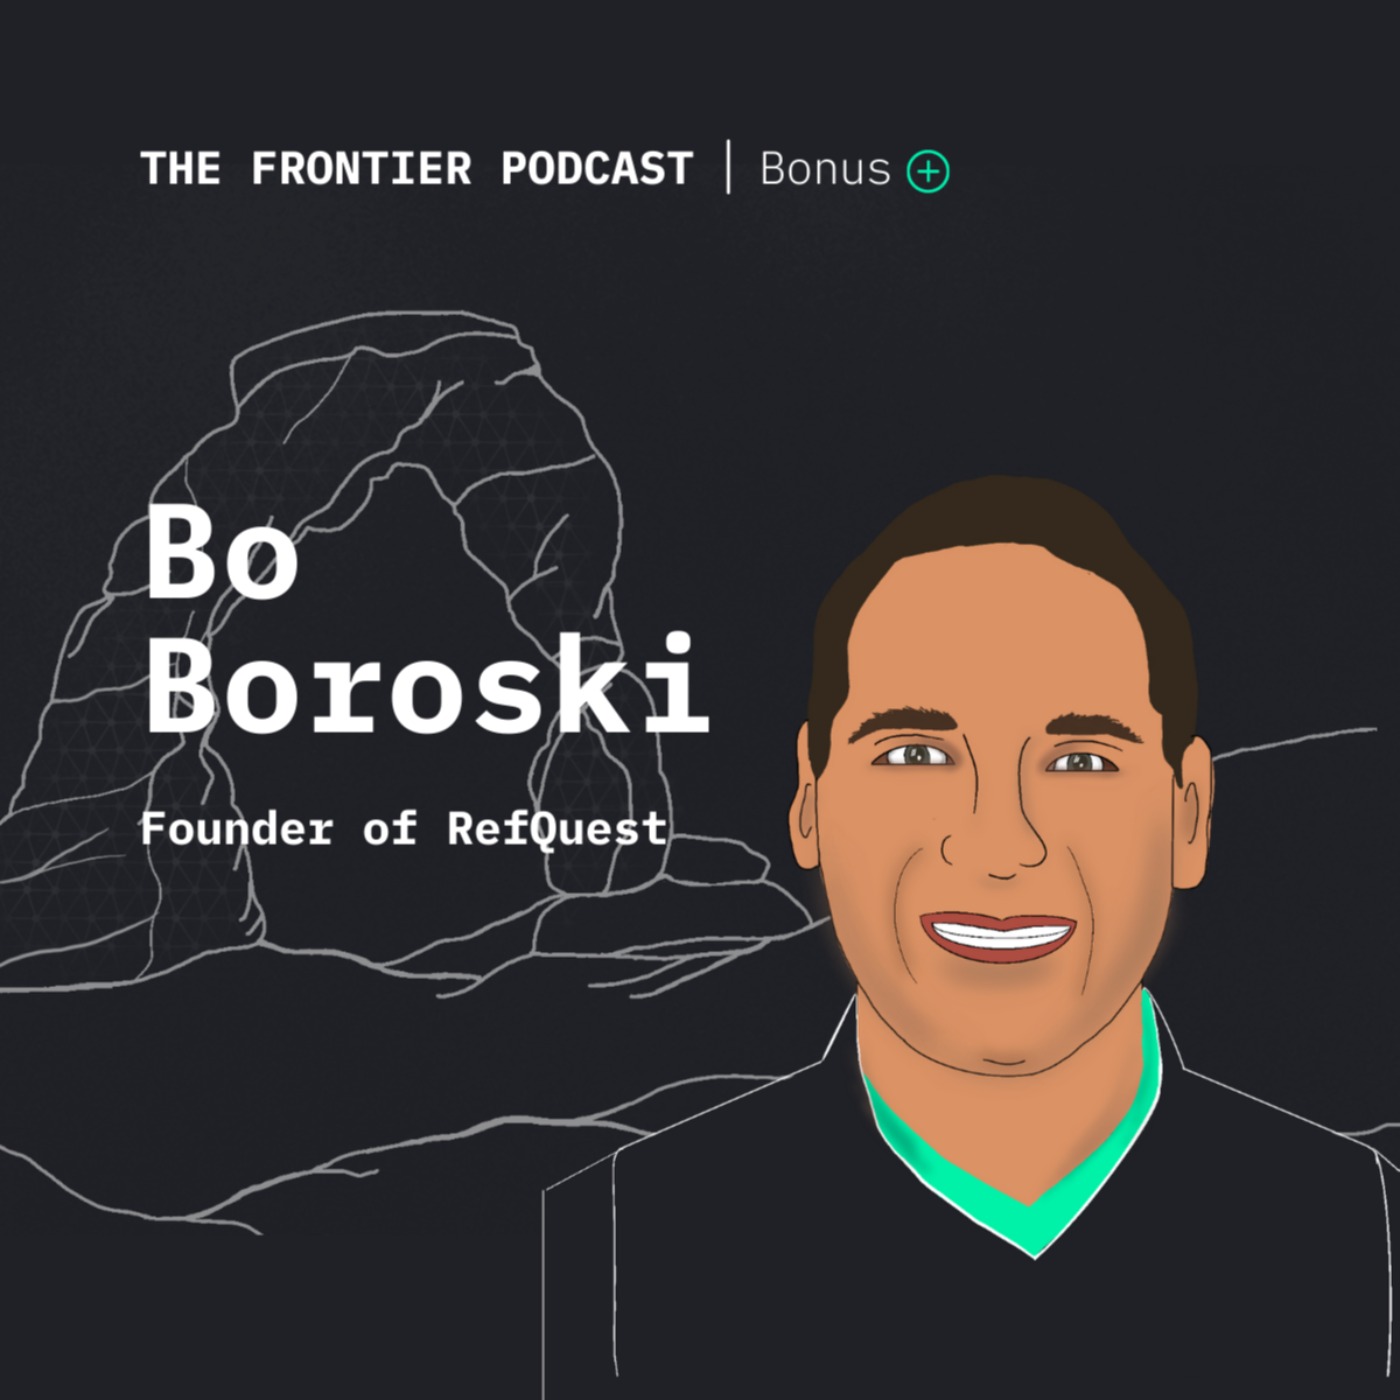 Bo Boroski